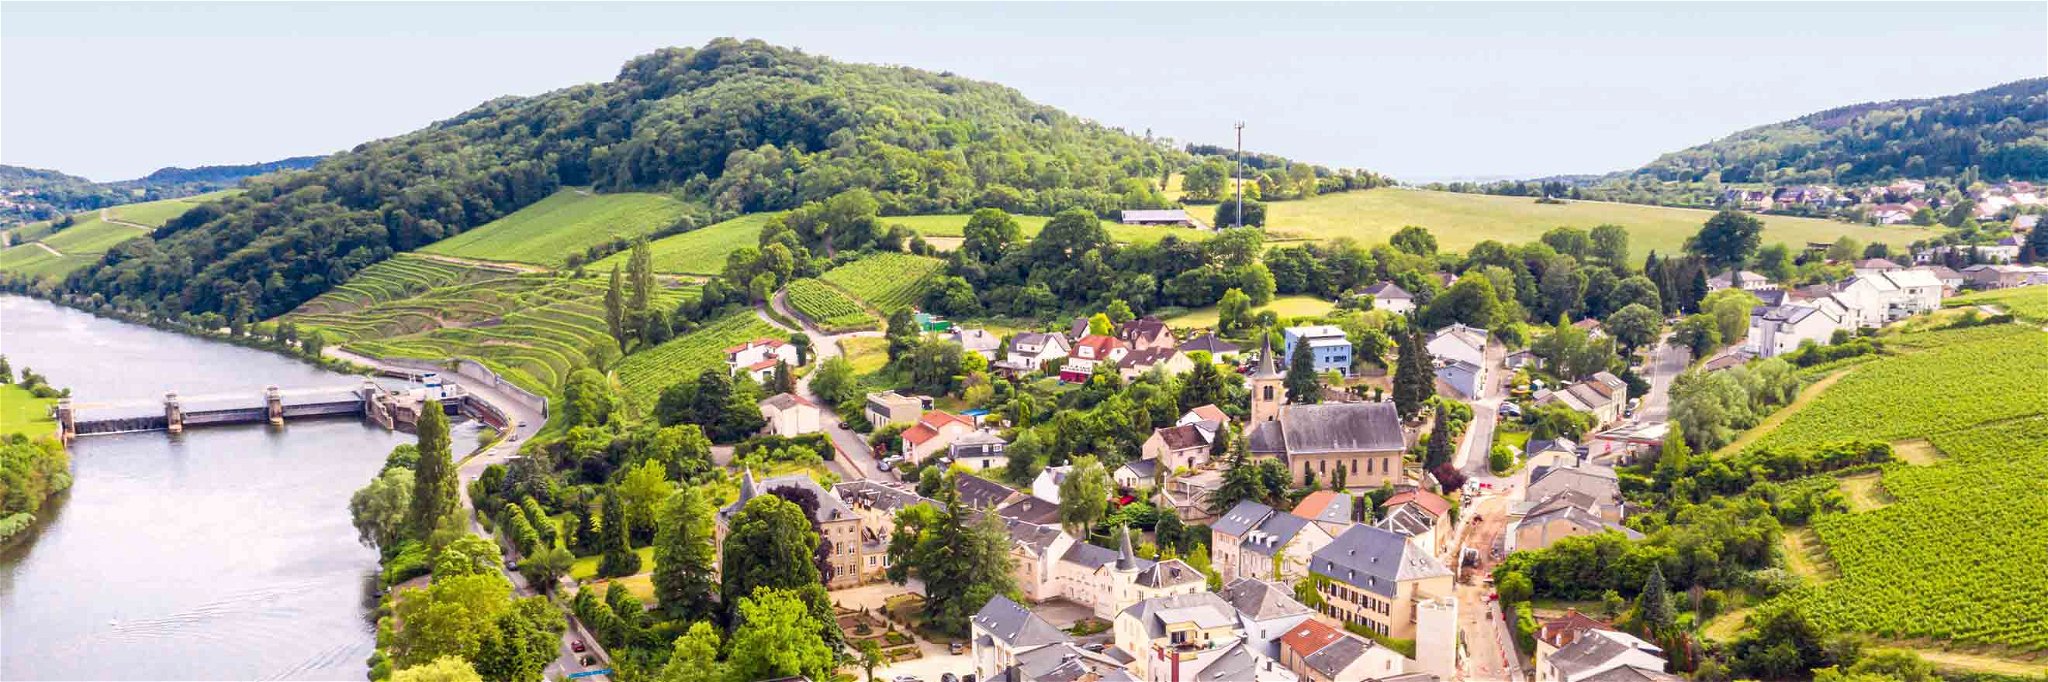 Der Rebstock gedeiht in Luxemburg schon seit Jahrhunderten.